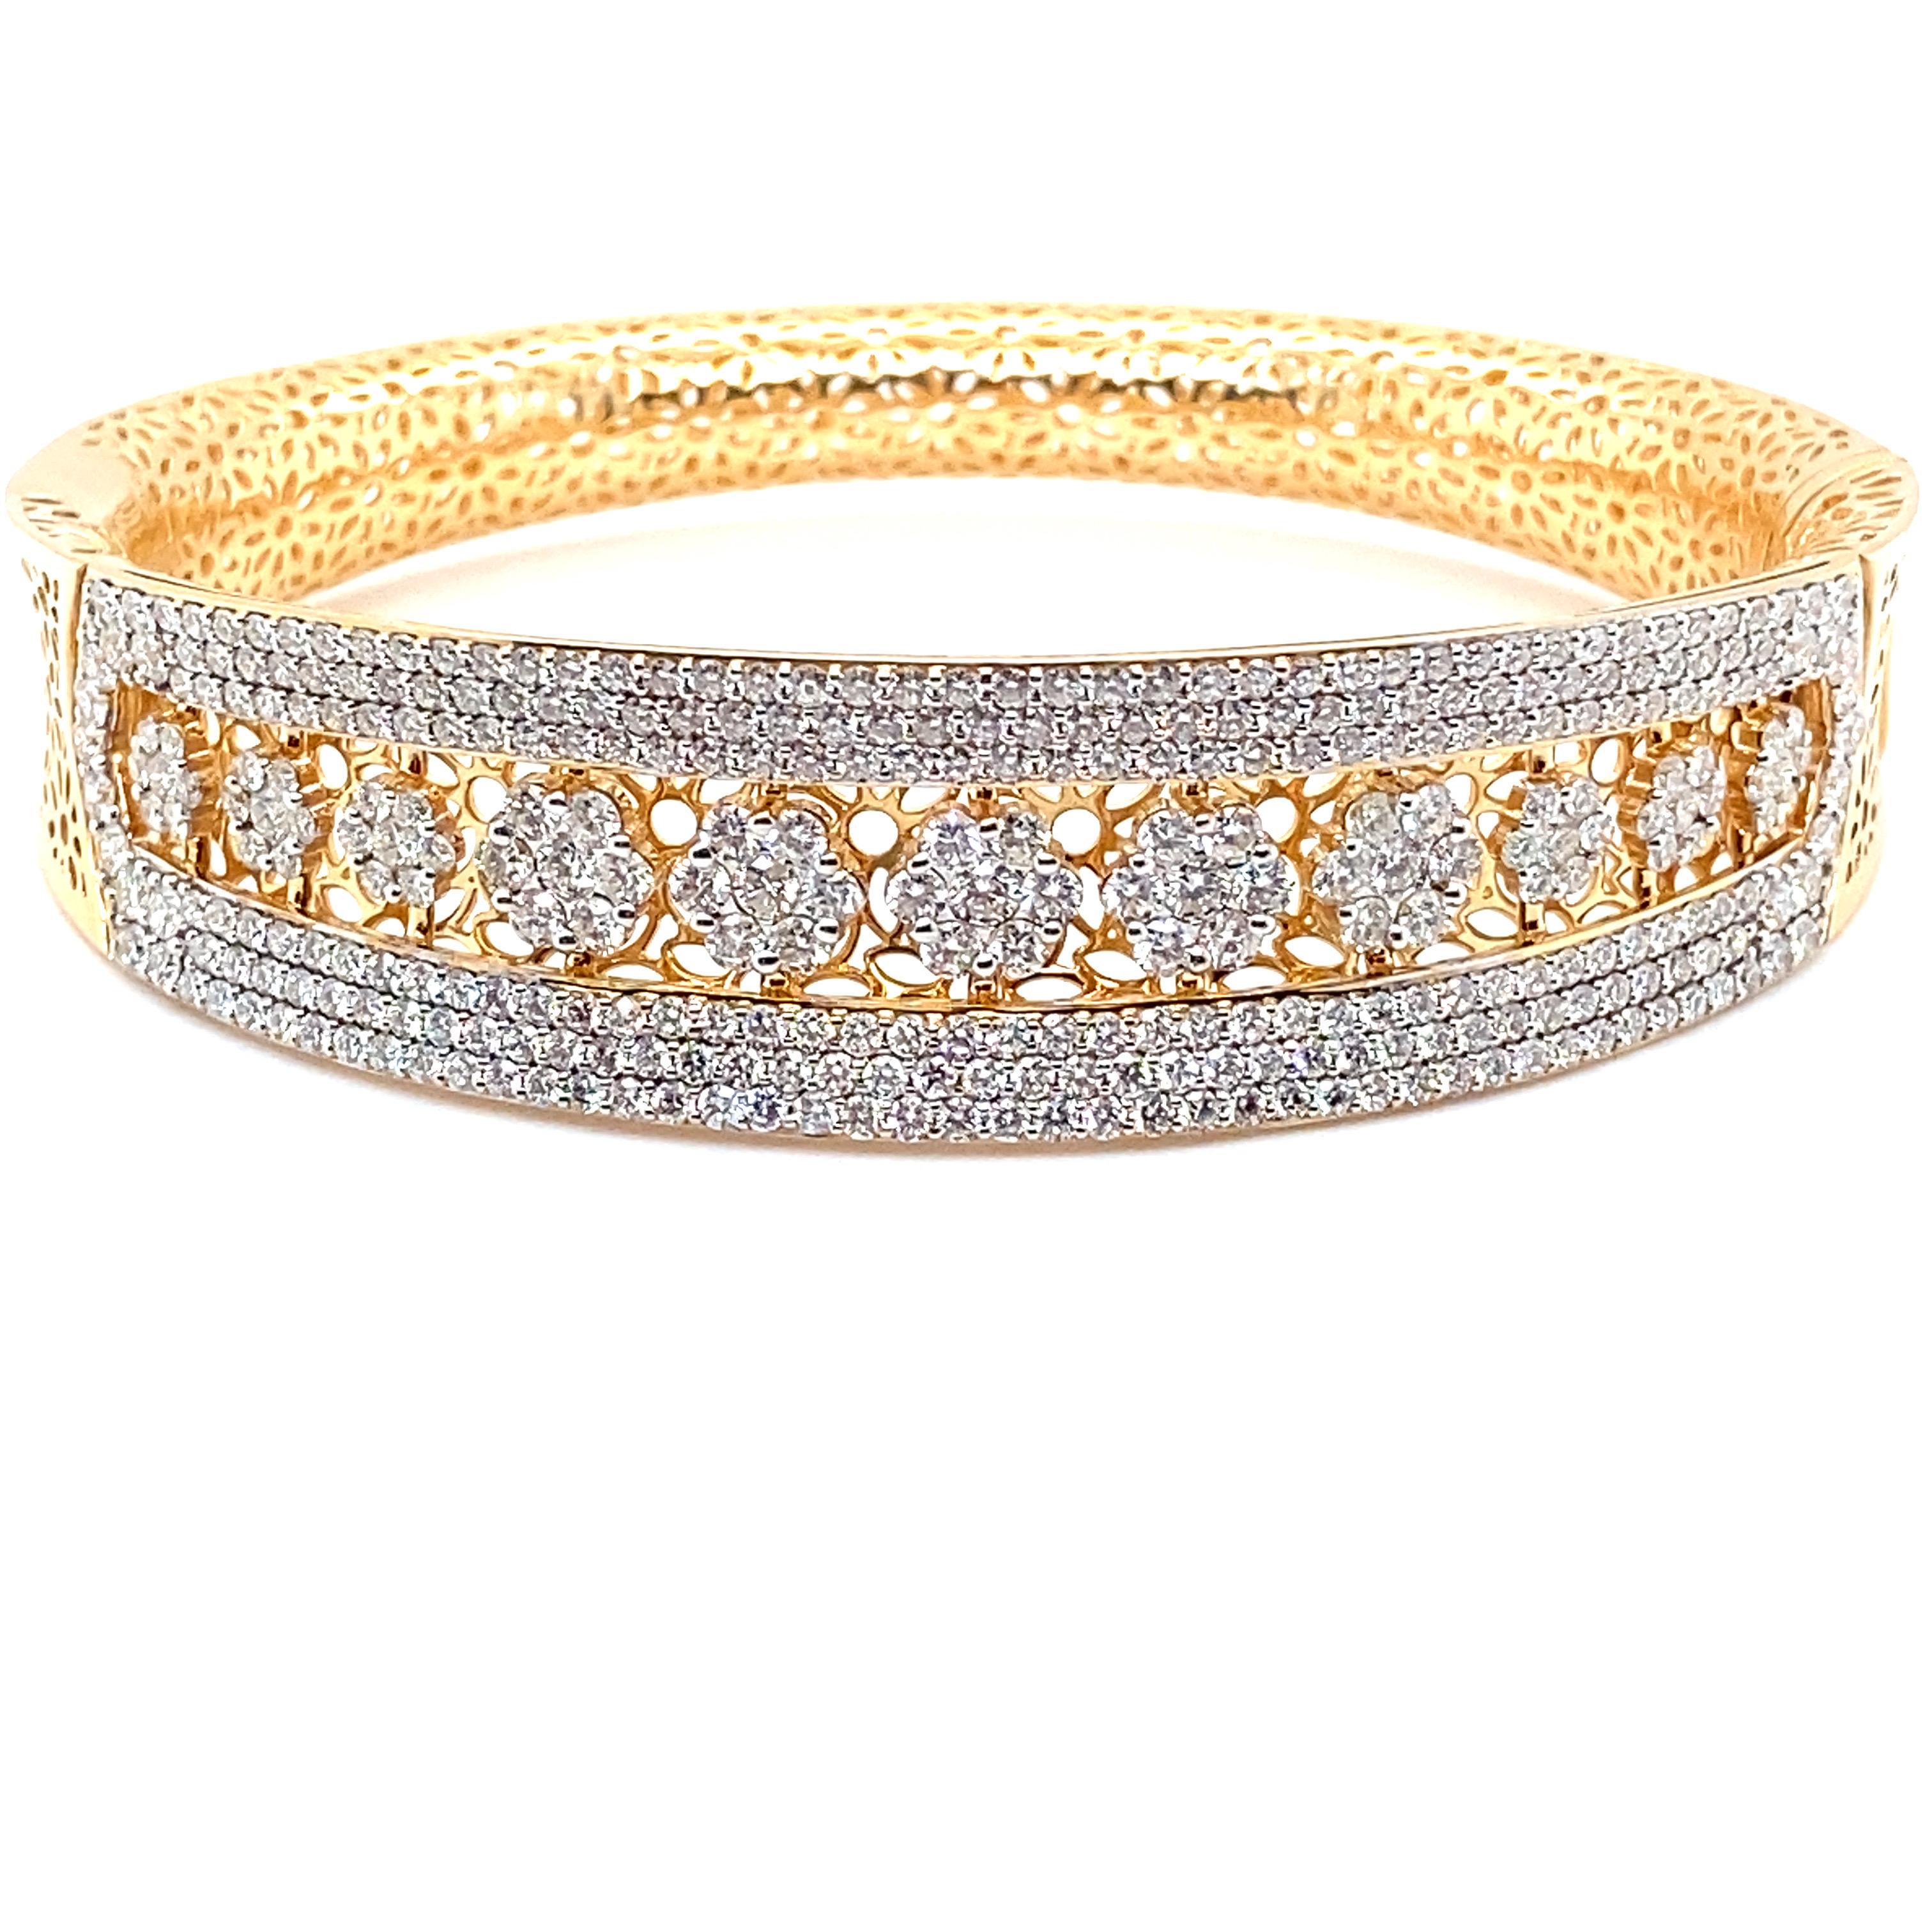 Dieses Armband mit 6,19 Karat Diamanten ist wunderschön aus 18 Karat Gelbgold gefertigt. Der obere halbkreisförmige Teil des Armreifs ist mit weißen Diamanten besetzt. Dieser aufklappbare Armreif hat eine vollständige Galerie, die auf den Bildern zu